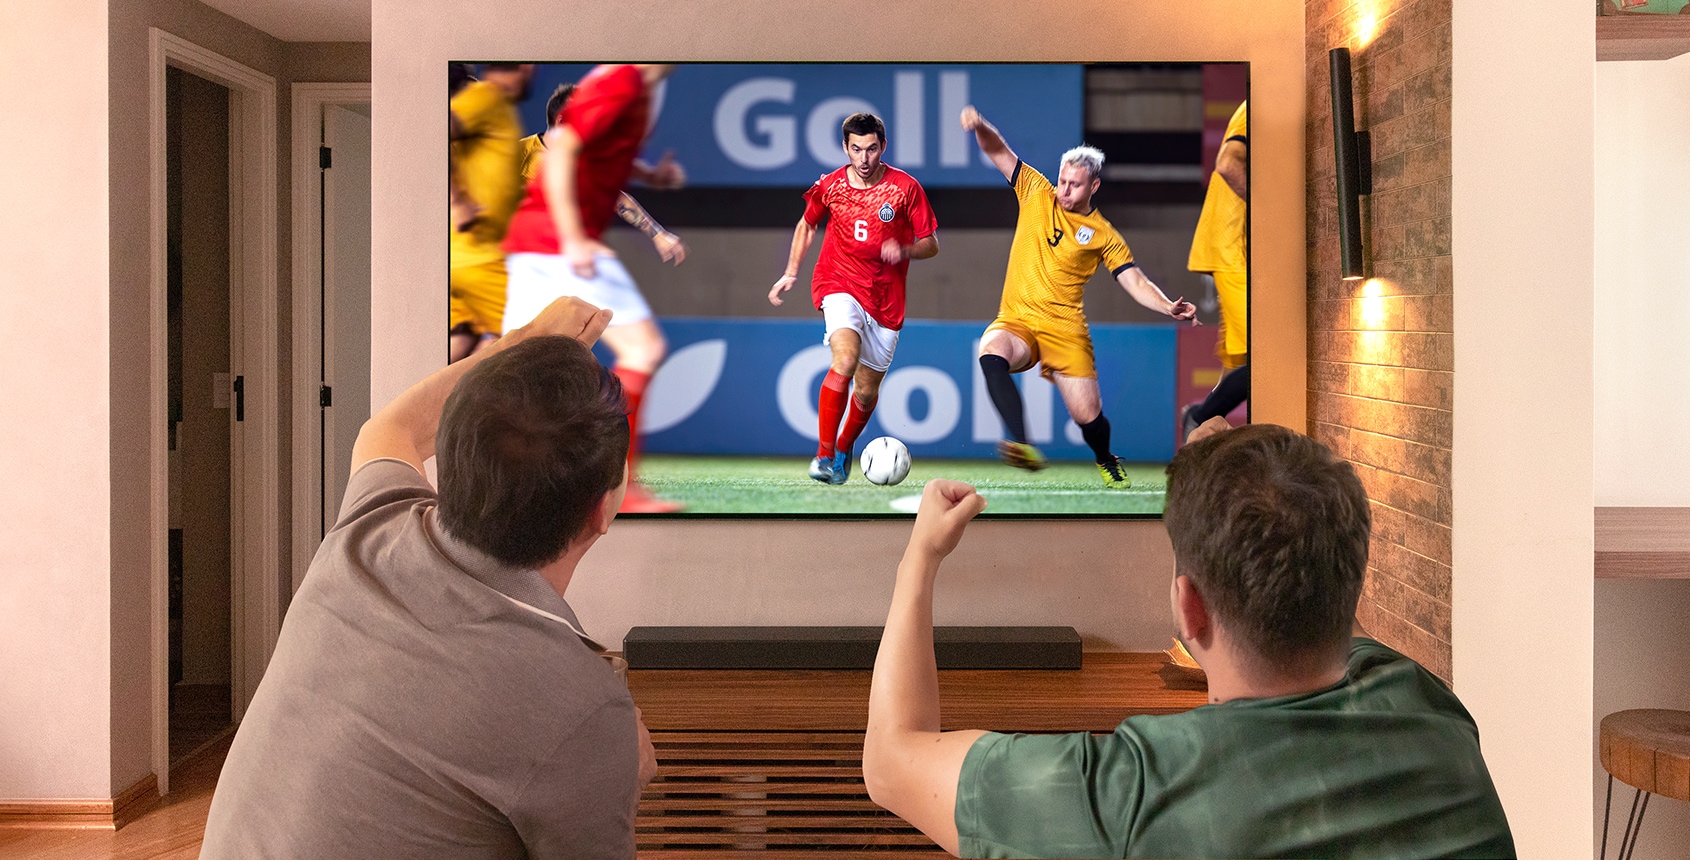 Dois amigos torcendo com os braços levantados, punhos cerrados para a partida de futebol jogada na TV LG OLED na sala de estar.